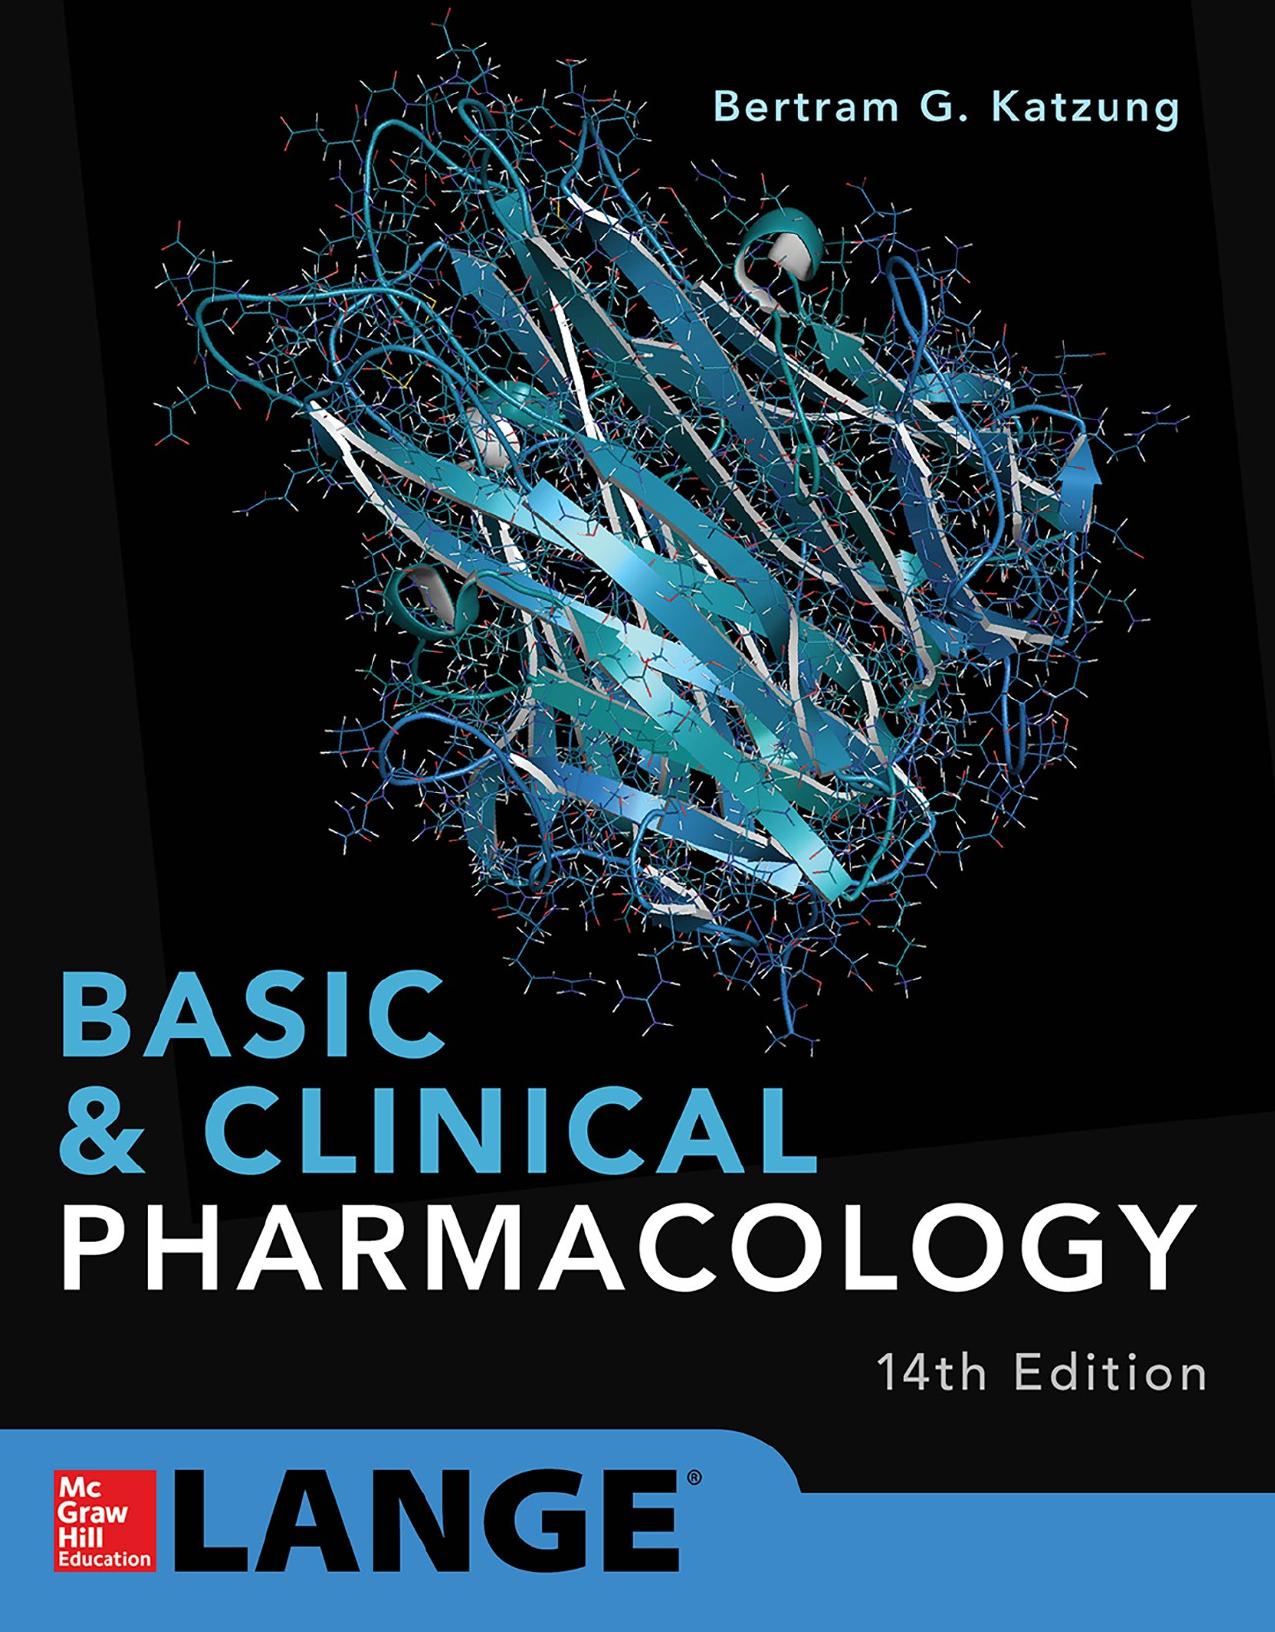 Basic & Clinical Pharmacology 2018